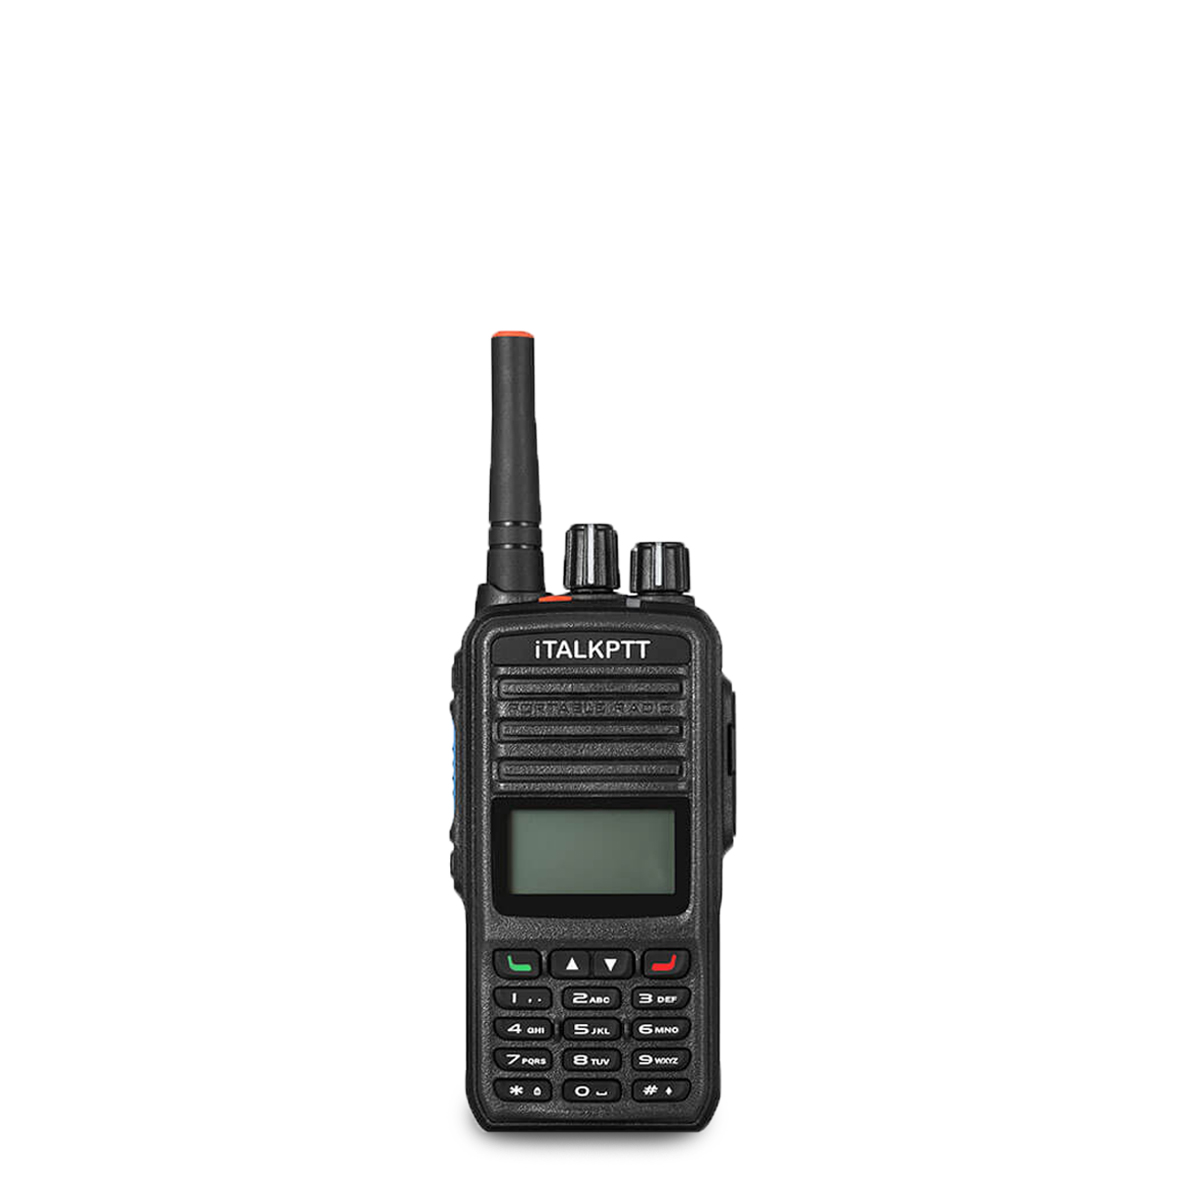 Radio Portátil PoC iTALK220 ITALKPTT EMEA Red 3G-4G